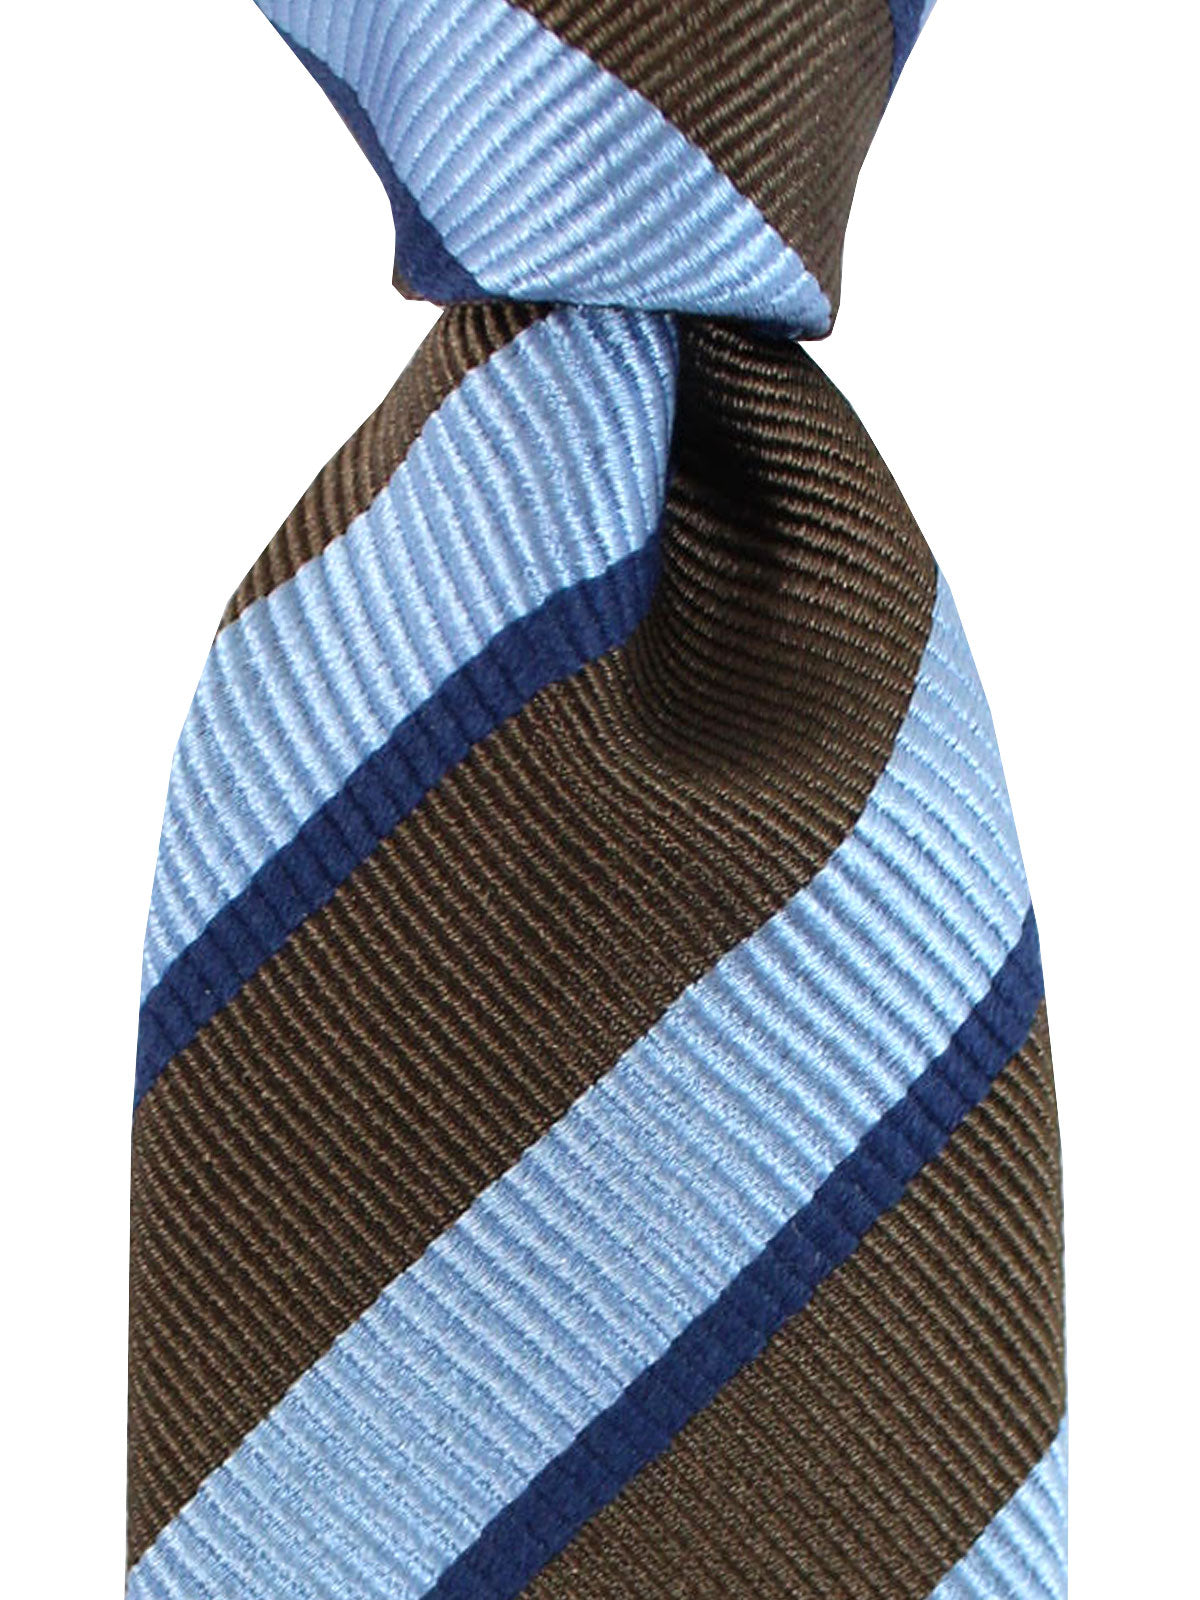 GG Jacquard Silk Tie in Blue - Gucci